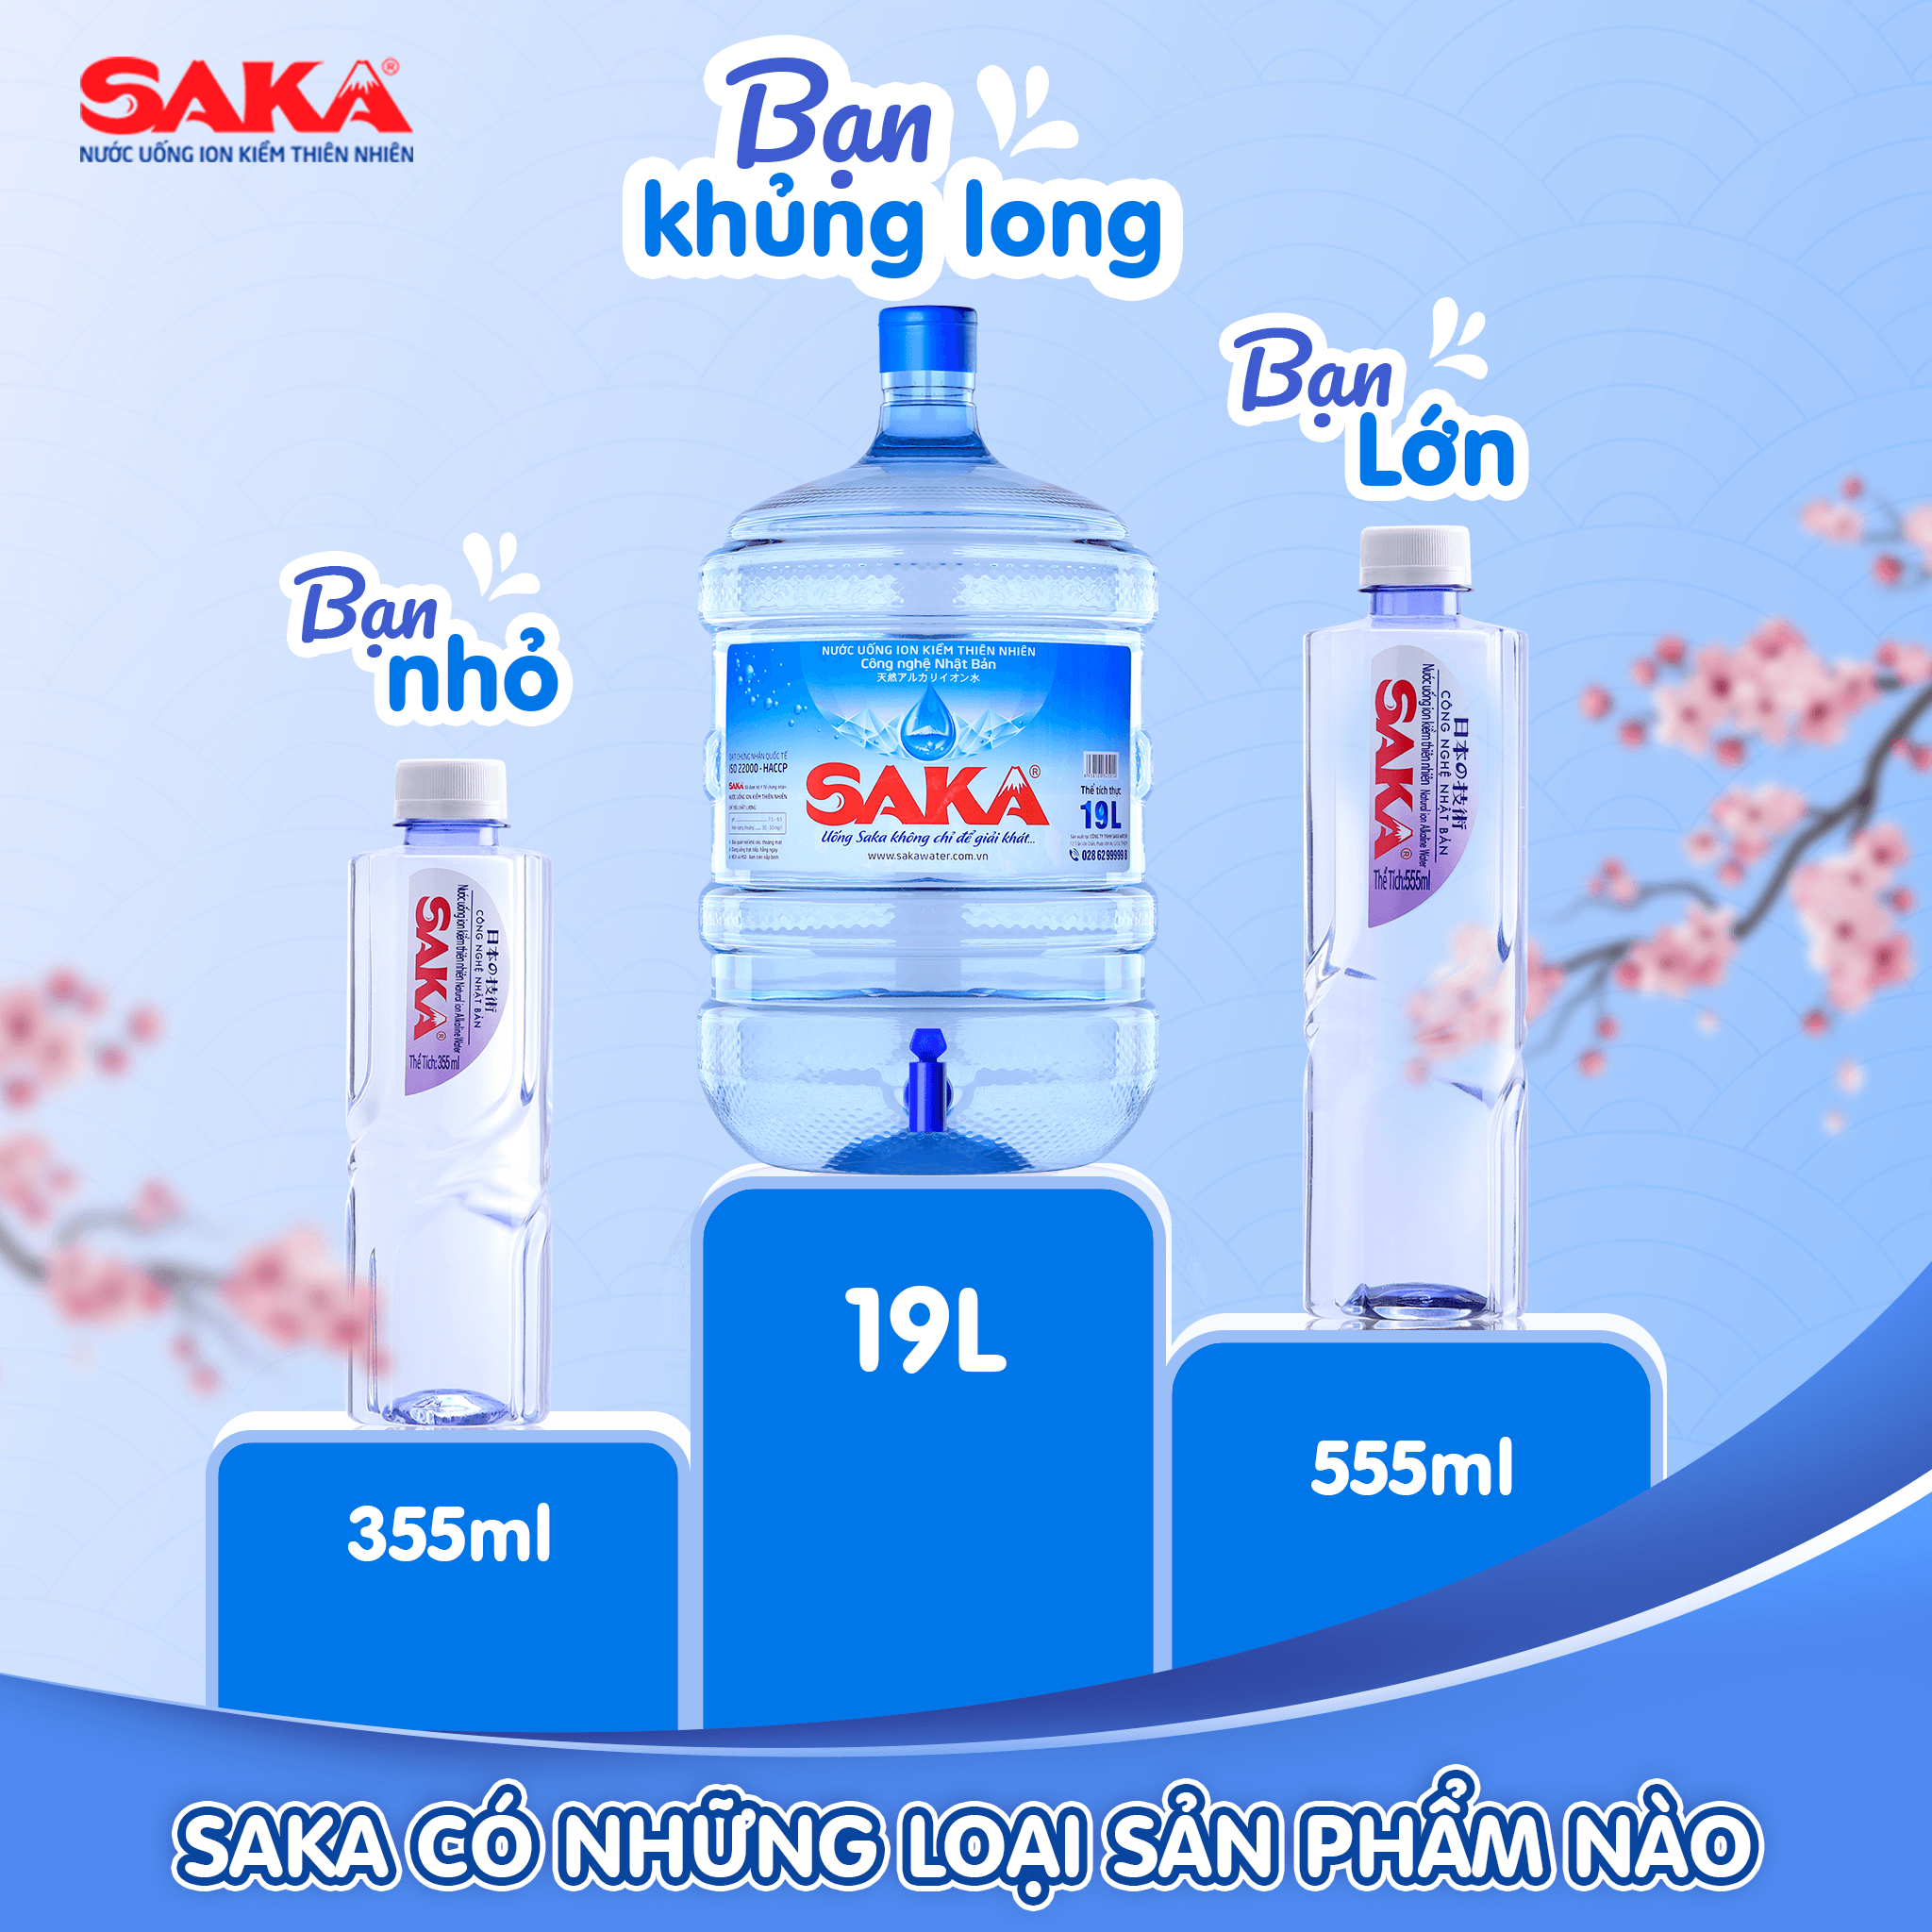 Các sản phẩm nước uống Saka chính hãng